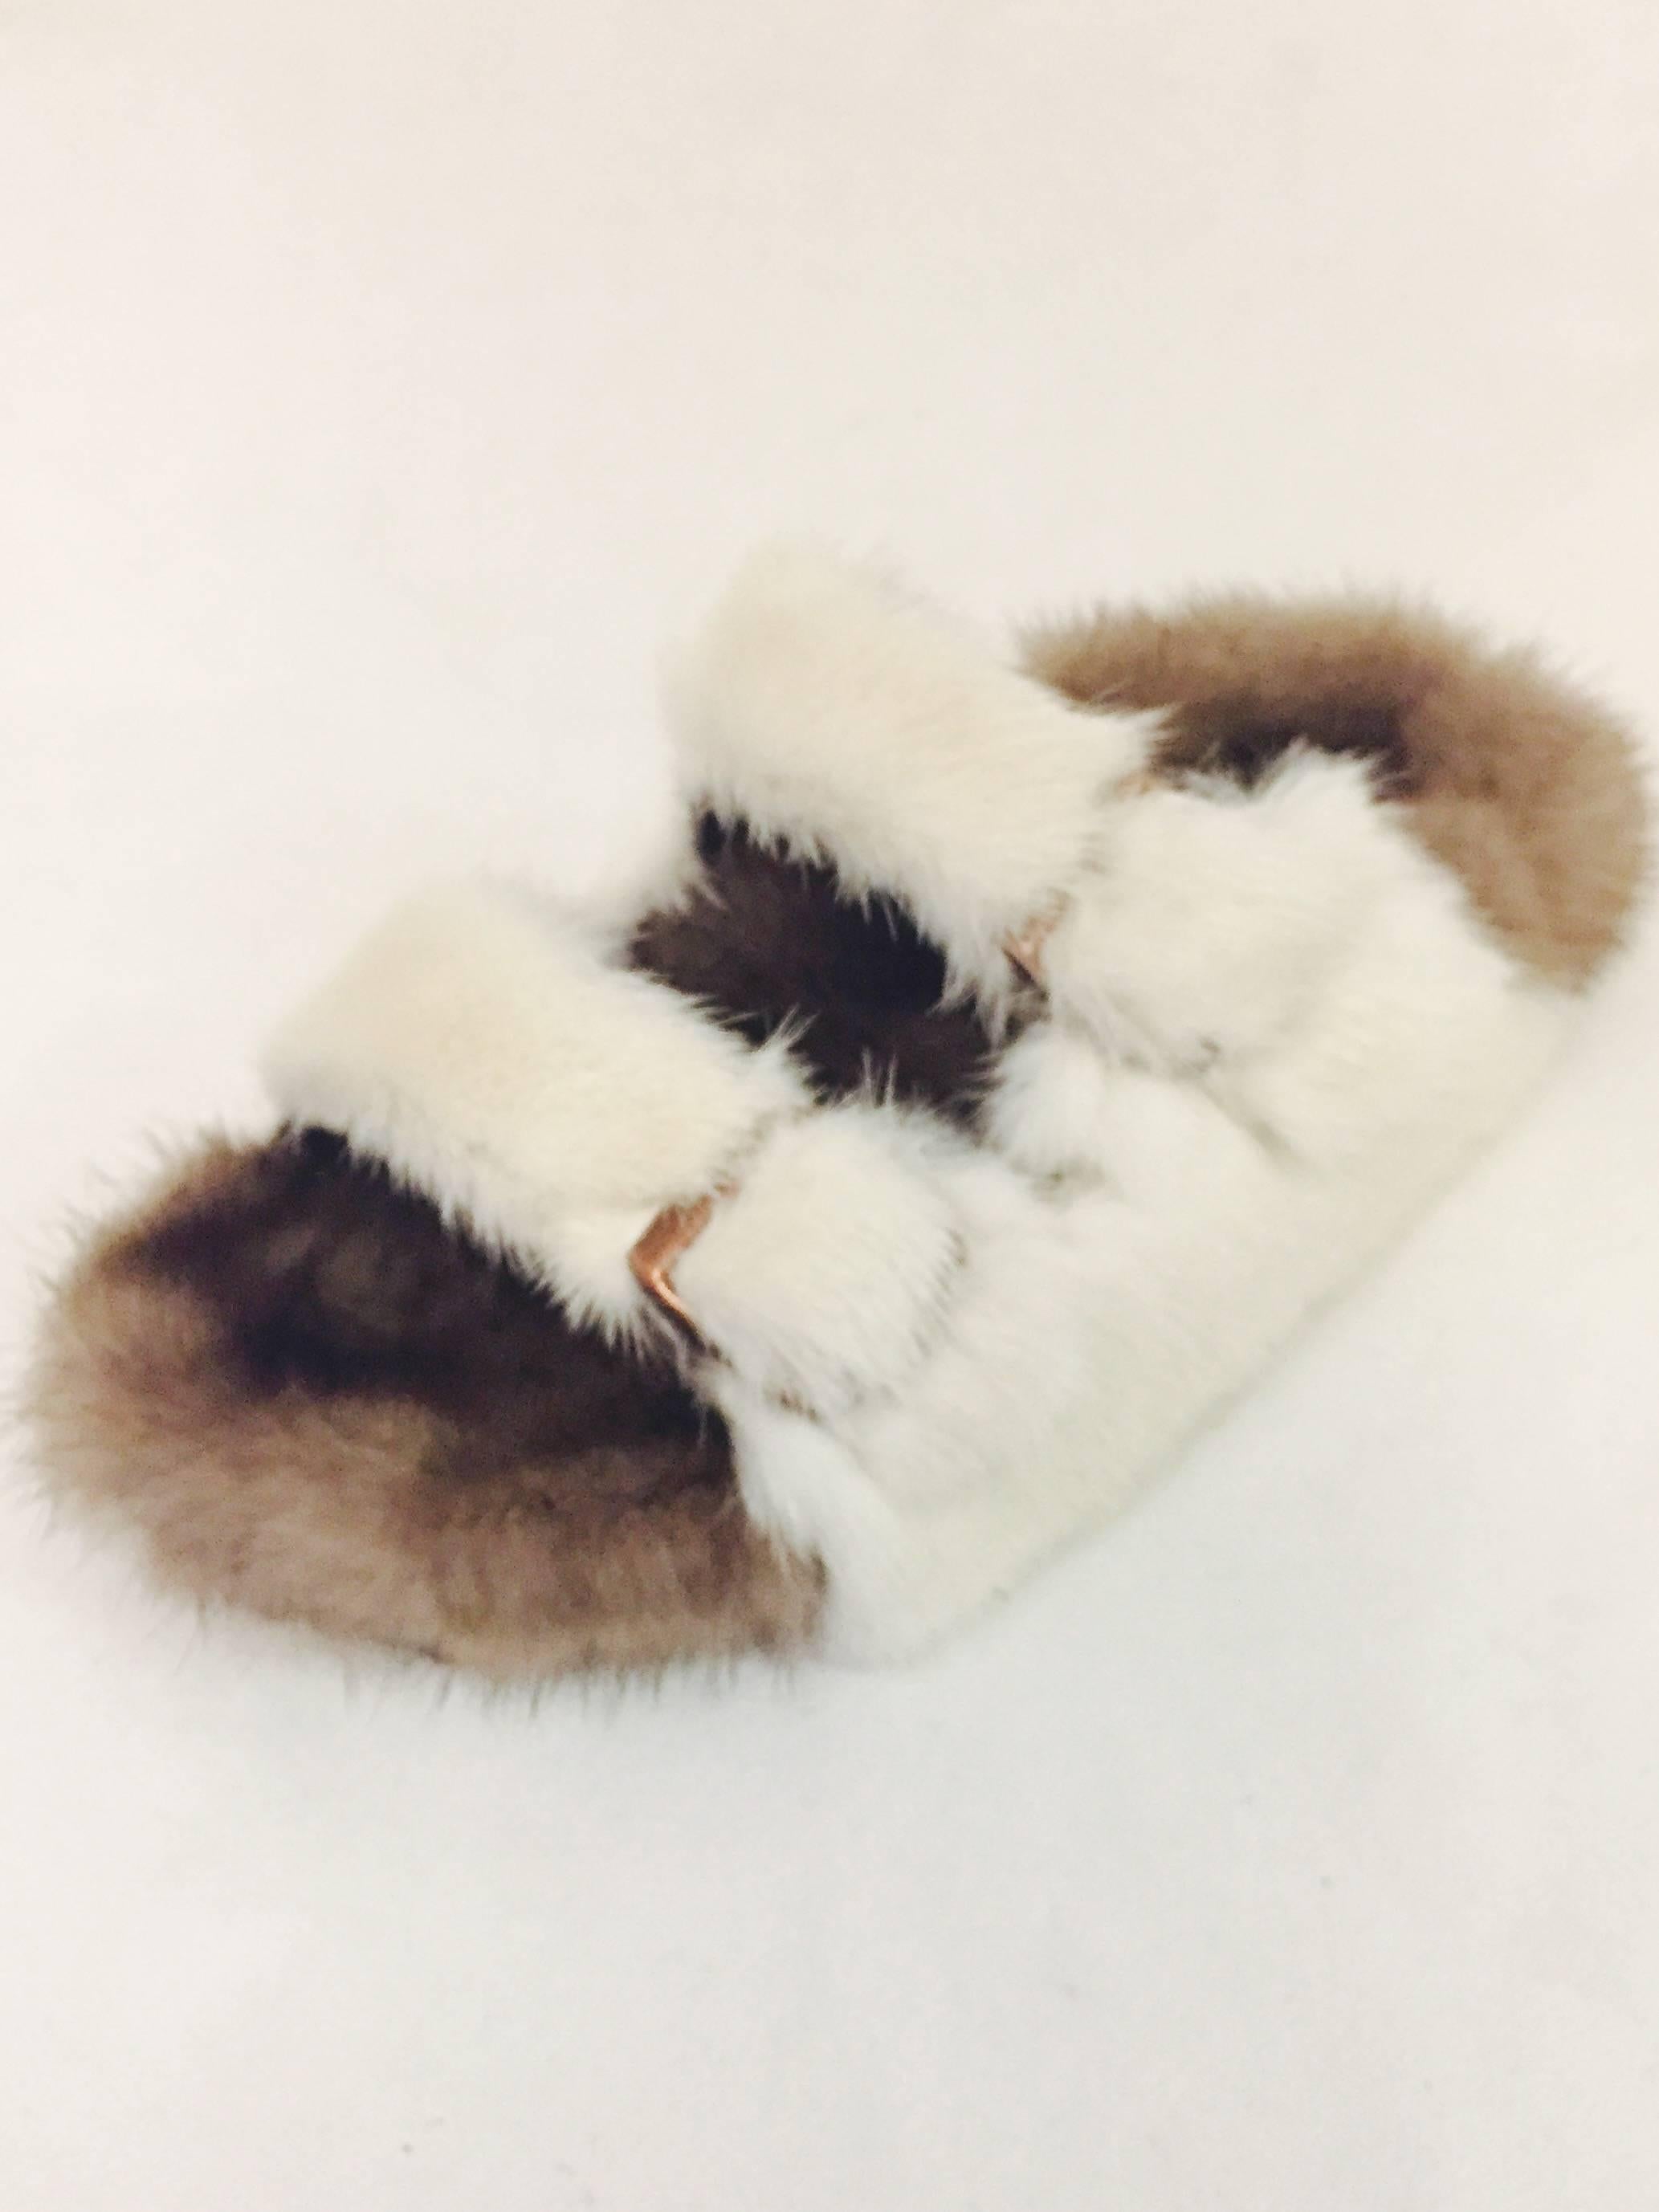 birkenstock sandals fur